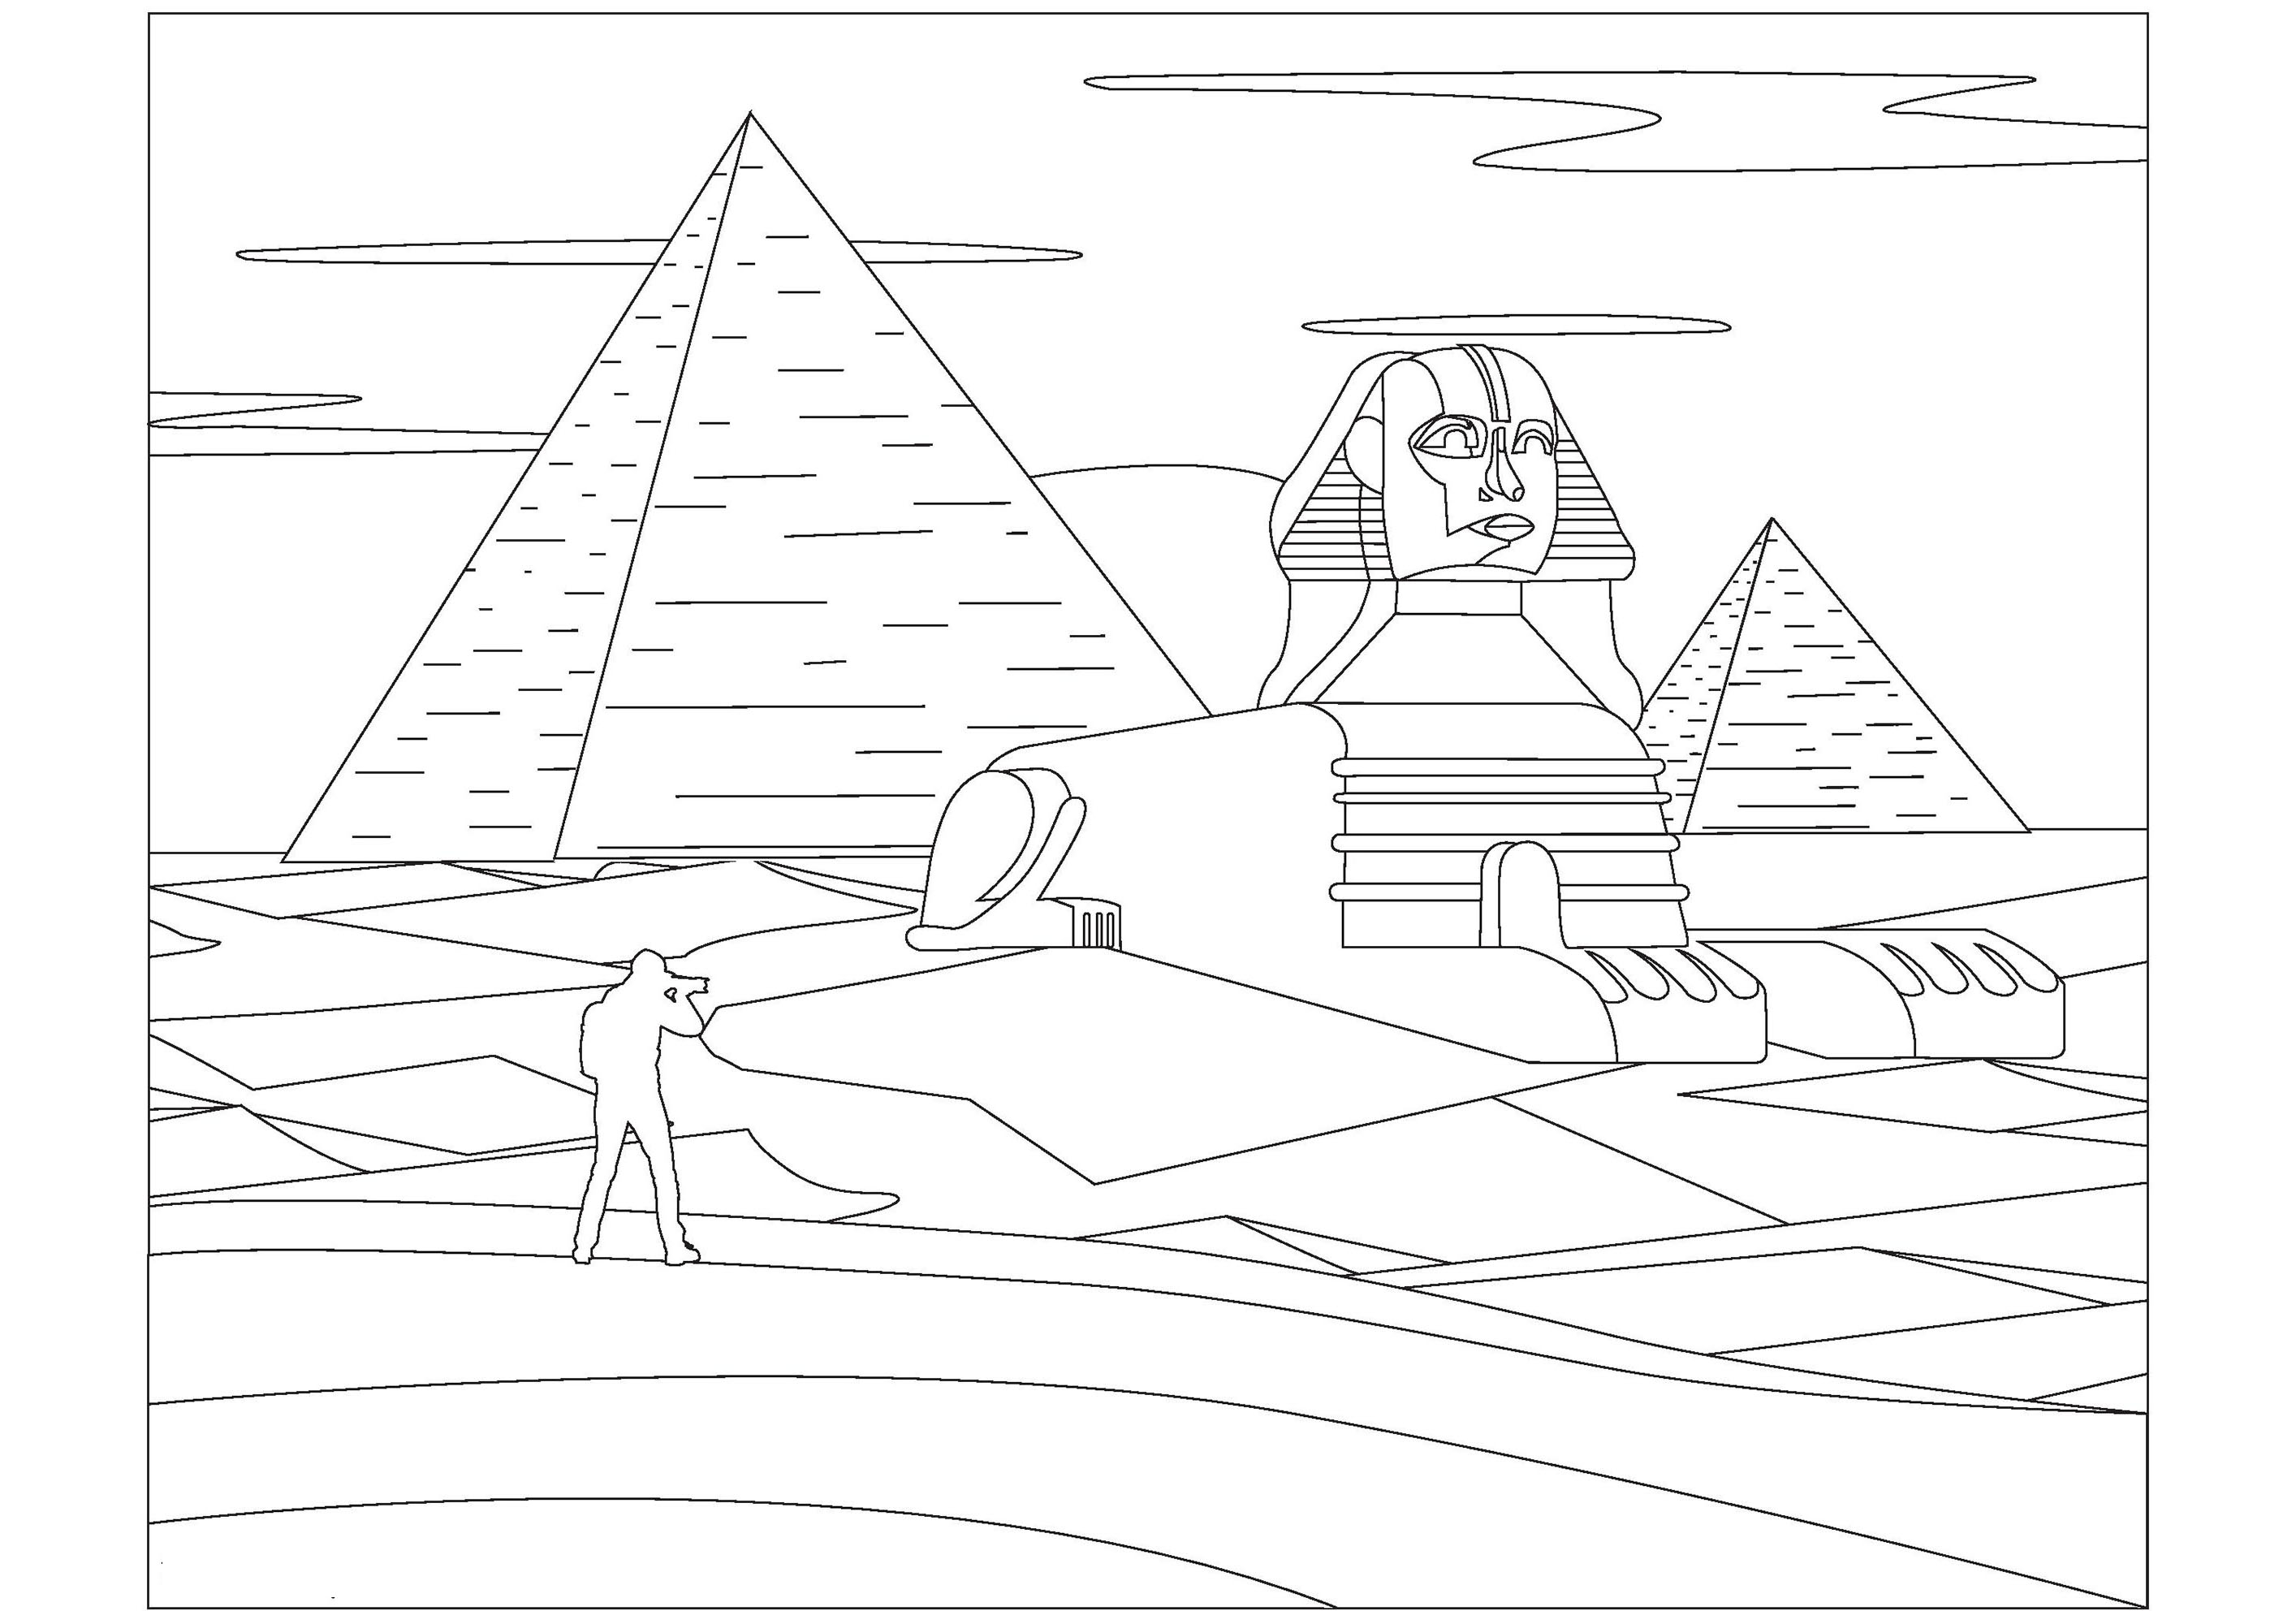 Colorear la Esfinge y las Pirámides de Egipto. La Esfinge es una estatua de piedra que se construyó hace mucho tiempo en Egipto. Tiene la cabeza de un faraón y el cuerpo de un león. Las Pirámides son edificios de piedra muy grandes y antiguos construidos también en Egipto, se utilizaban como tumbas para los faraones.